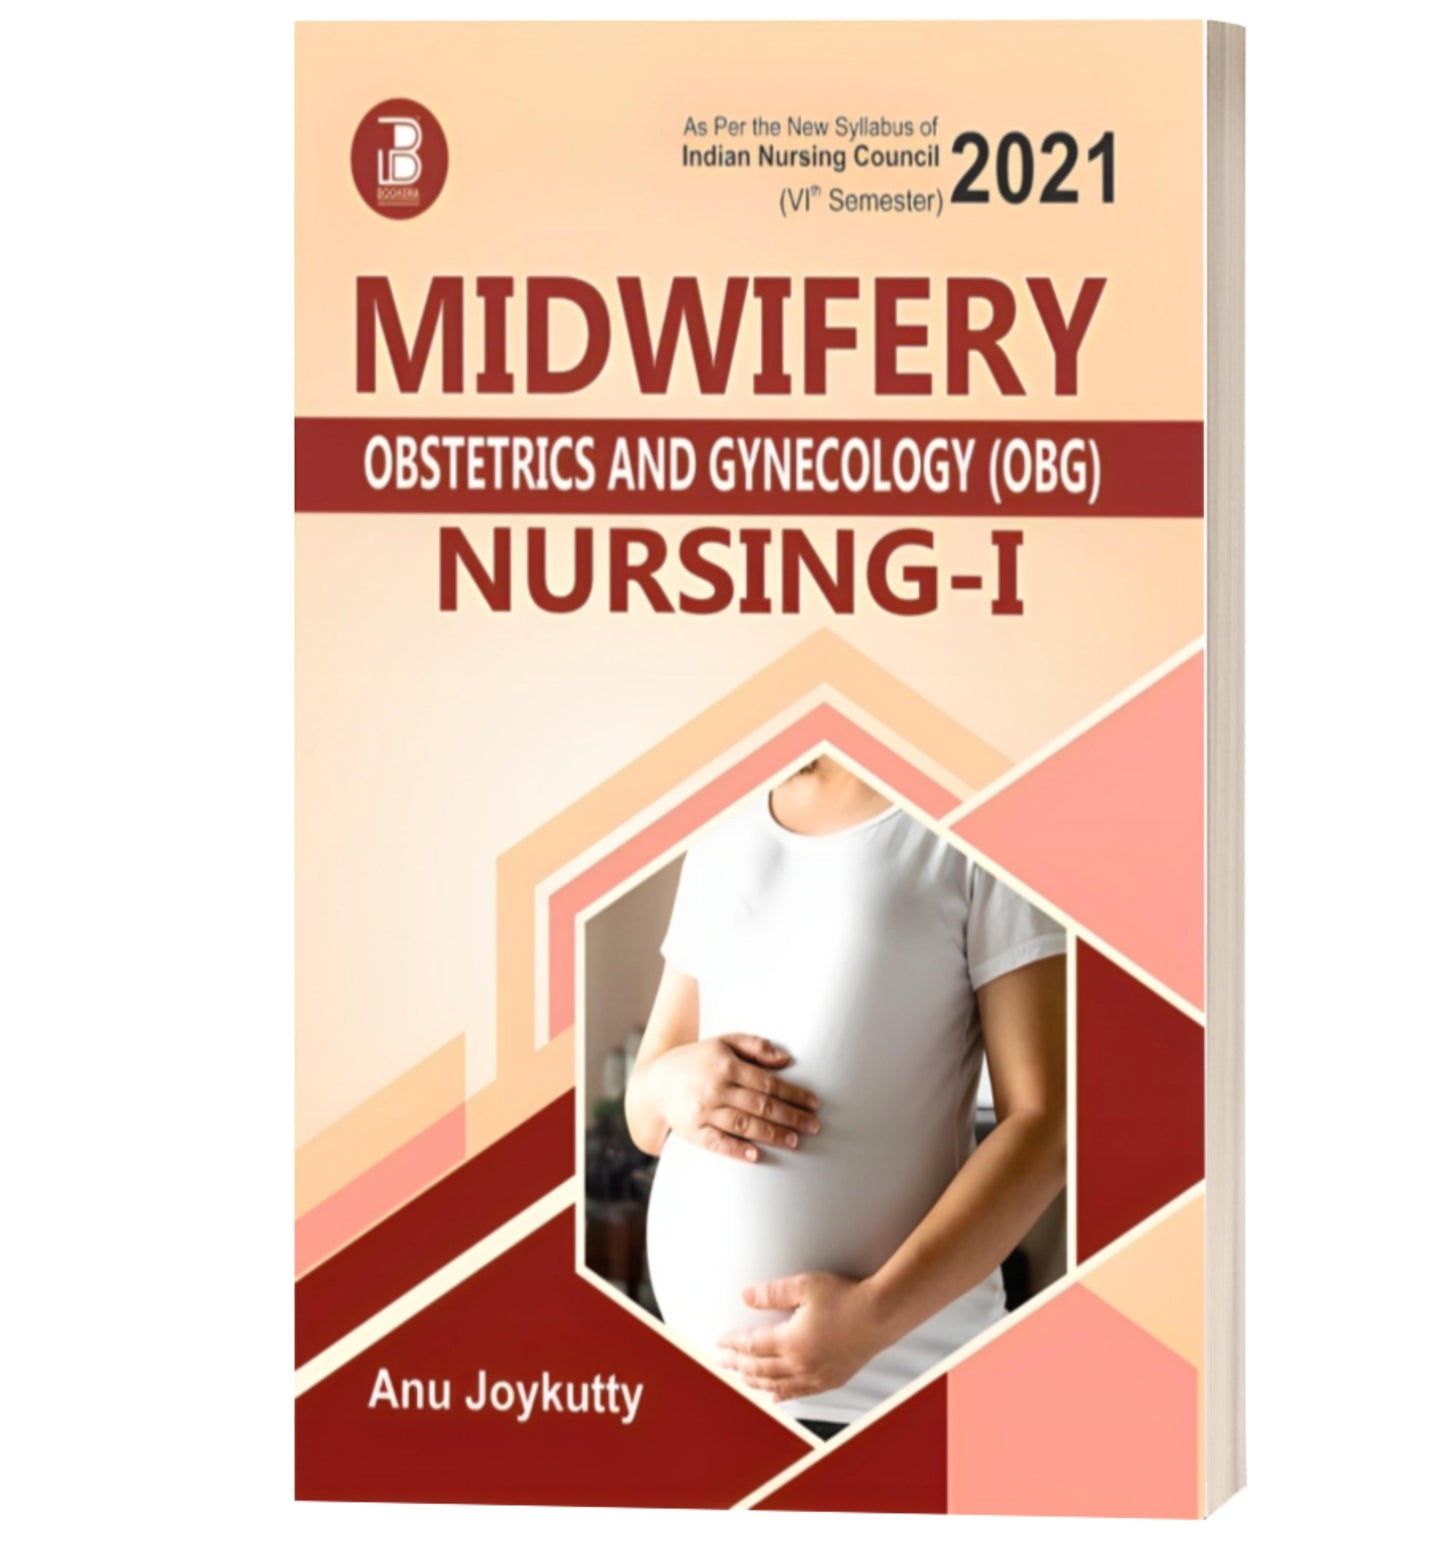 Midwifery (Obstetrics & Gynecology) Nursing (Vol-I)